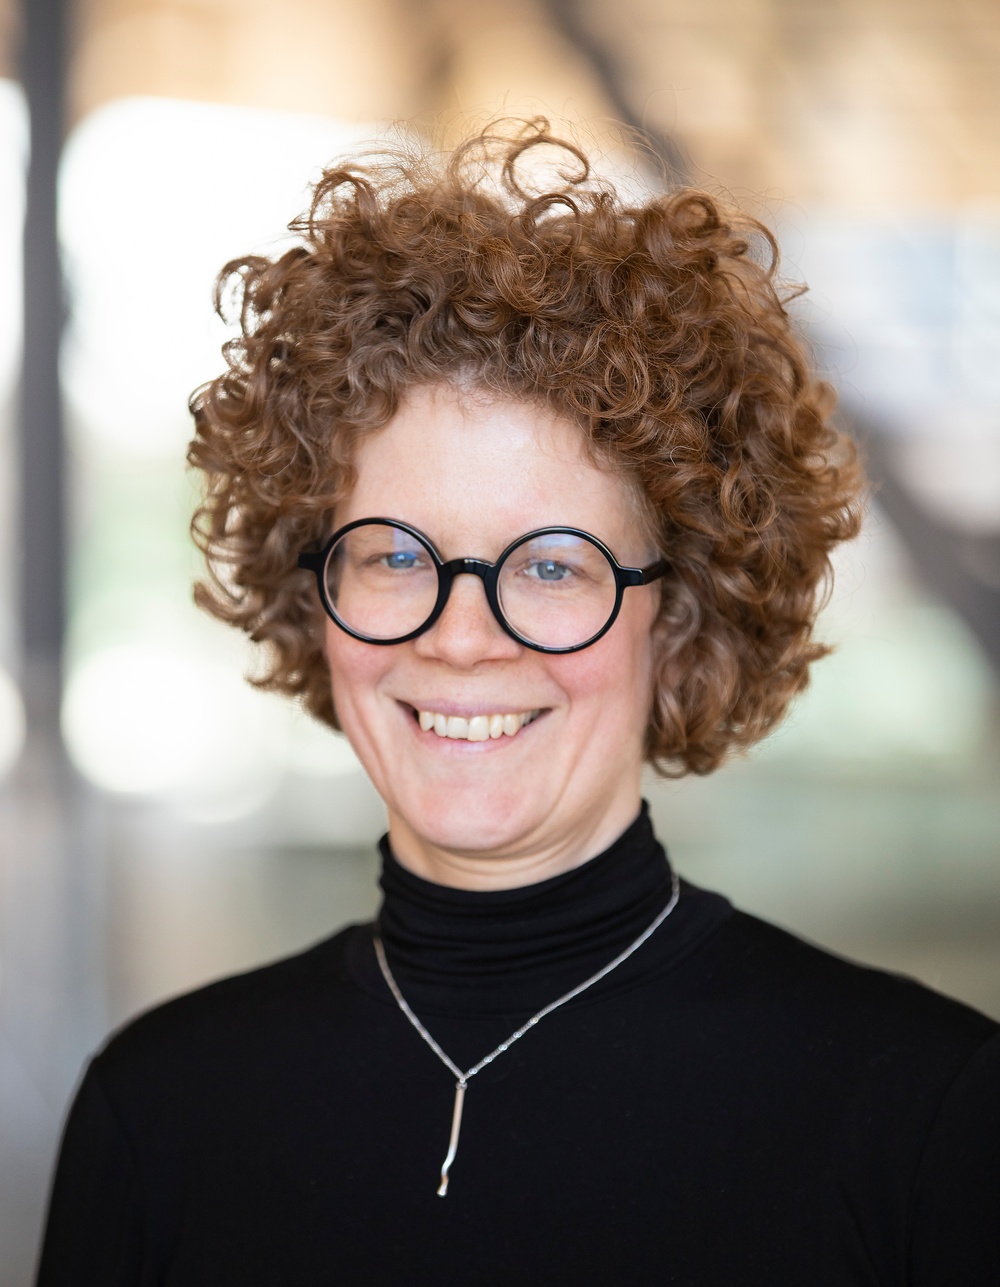 Johanna Sjöstedt, projektassistent inom forskning vid Karlstads universitet och koordinator för konferensen g22.